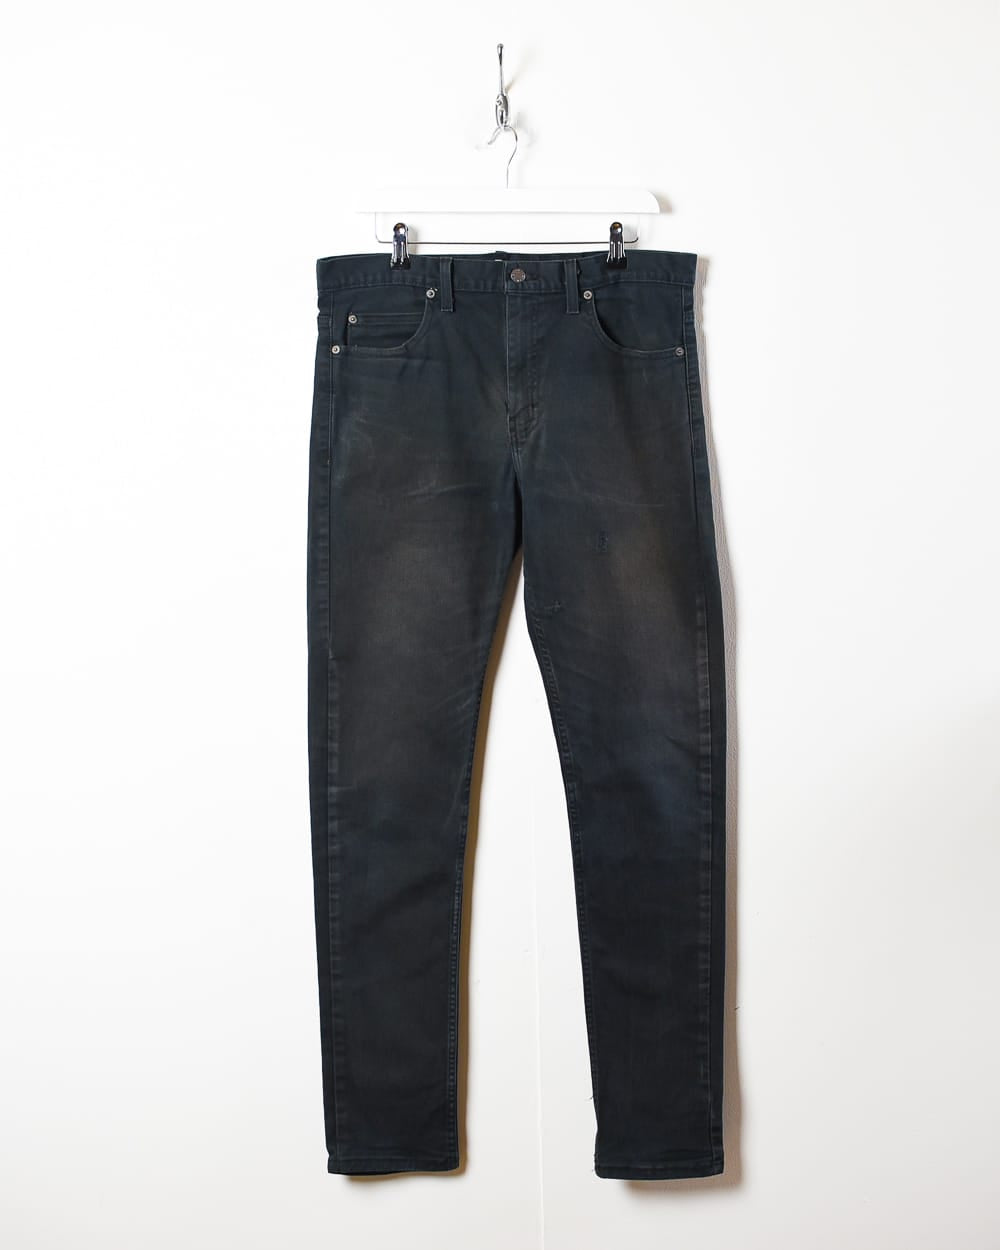 Black Dickies Jeans - W36 L33